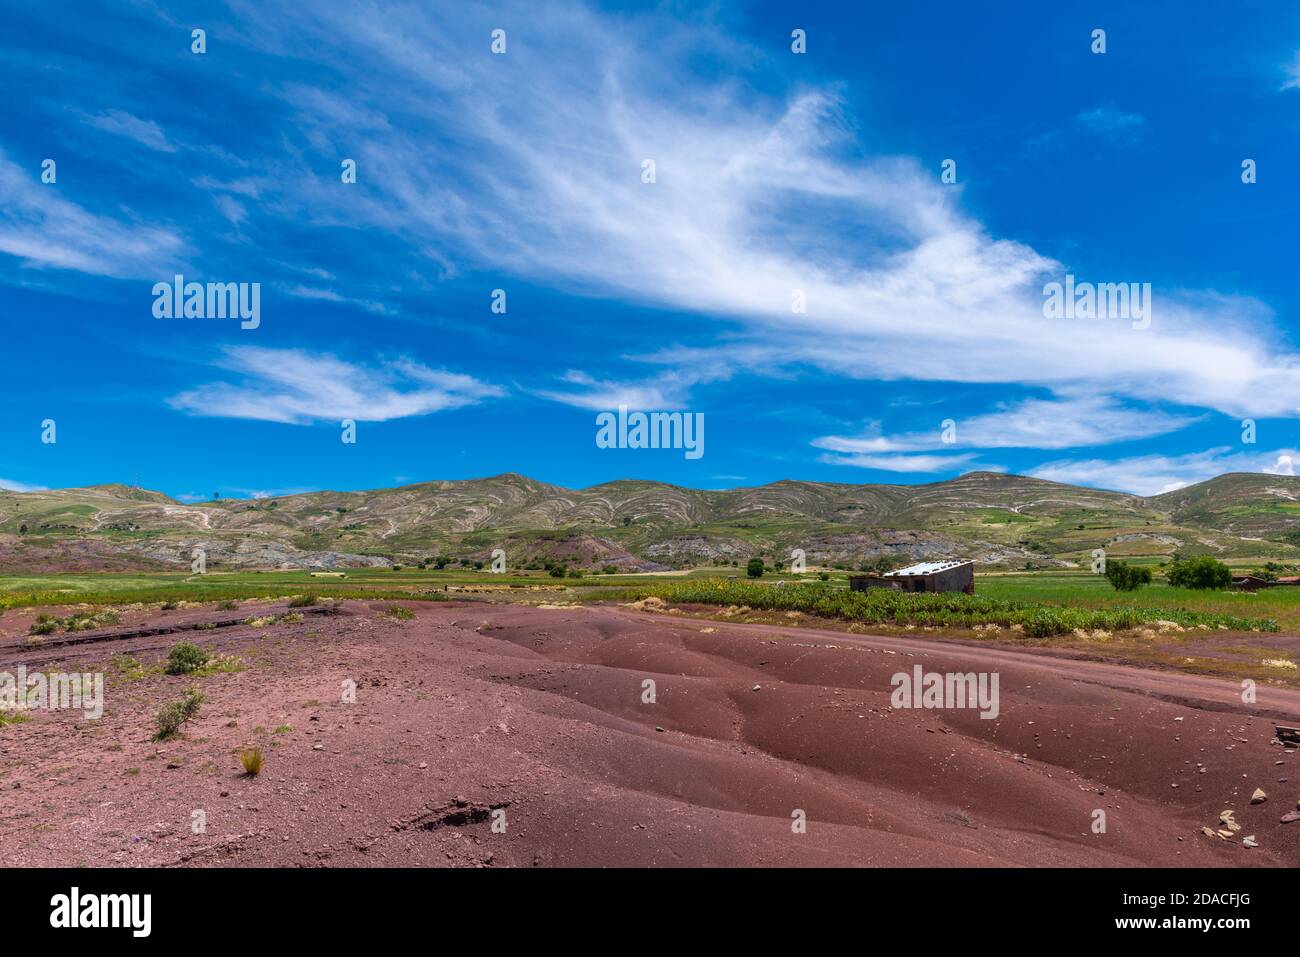 Landwirtschaftliche Landschaft in der Region Maragua, Departemento Sucre, Cordillera Central, Anden, Bolivien, Lateinamerika Stockfoto